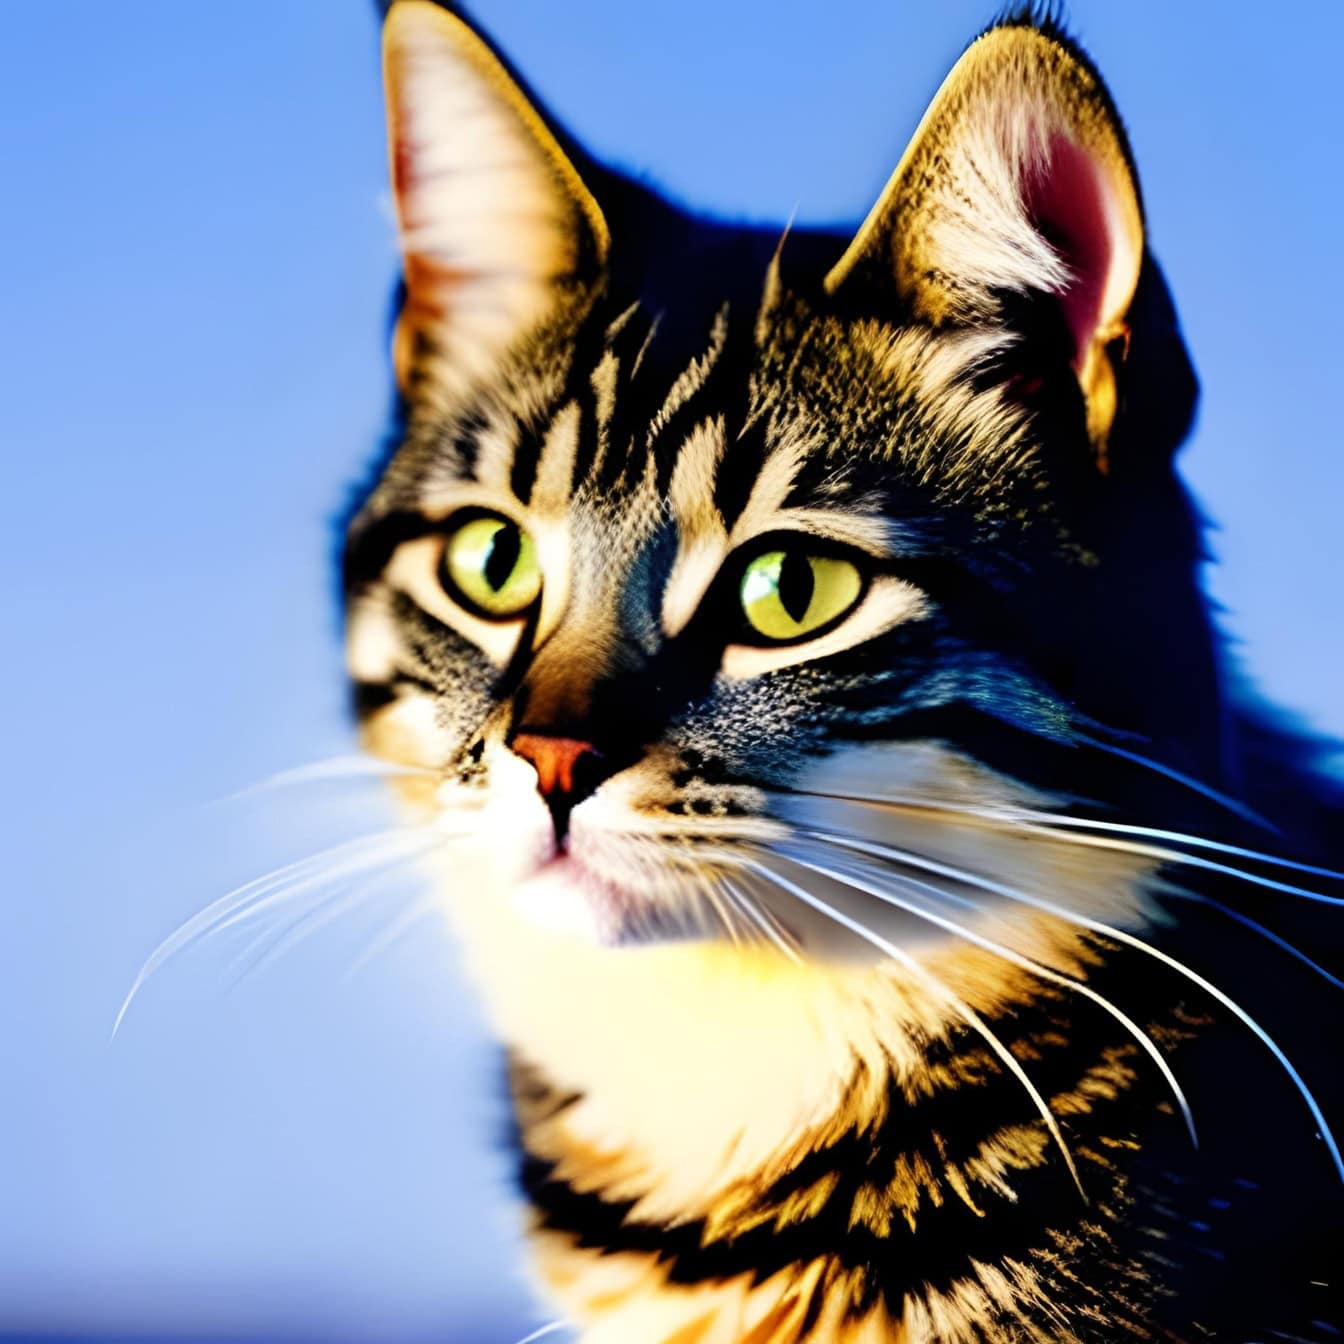 Grafica di un adorabile gattino con occhi giallo-verdastri su sfondo blu